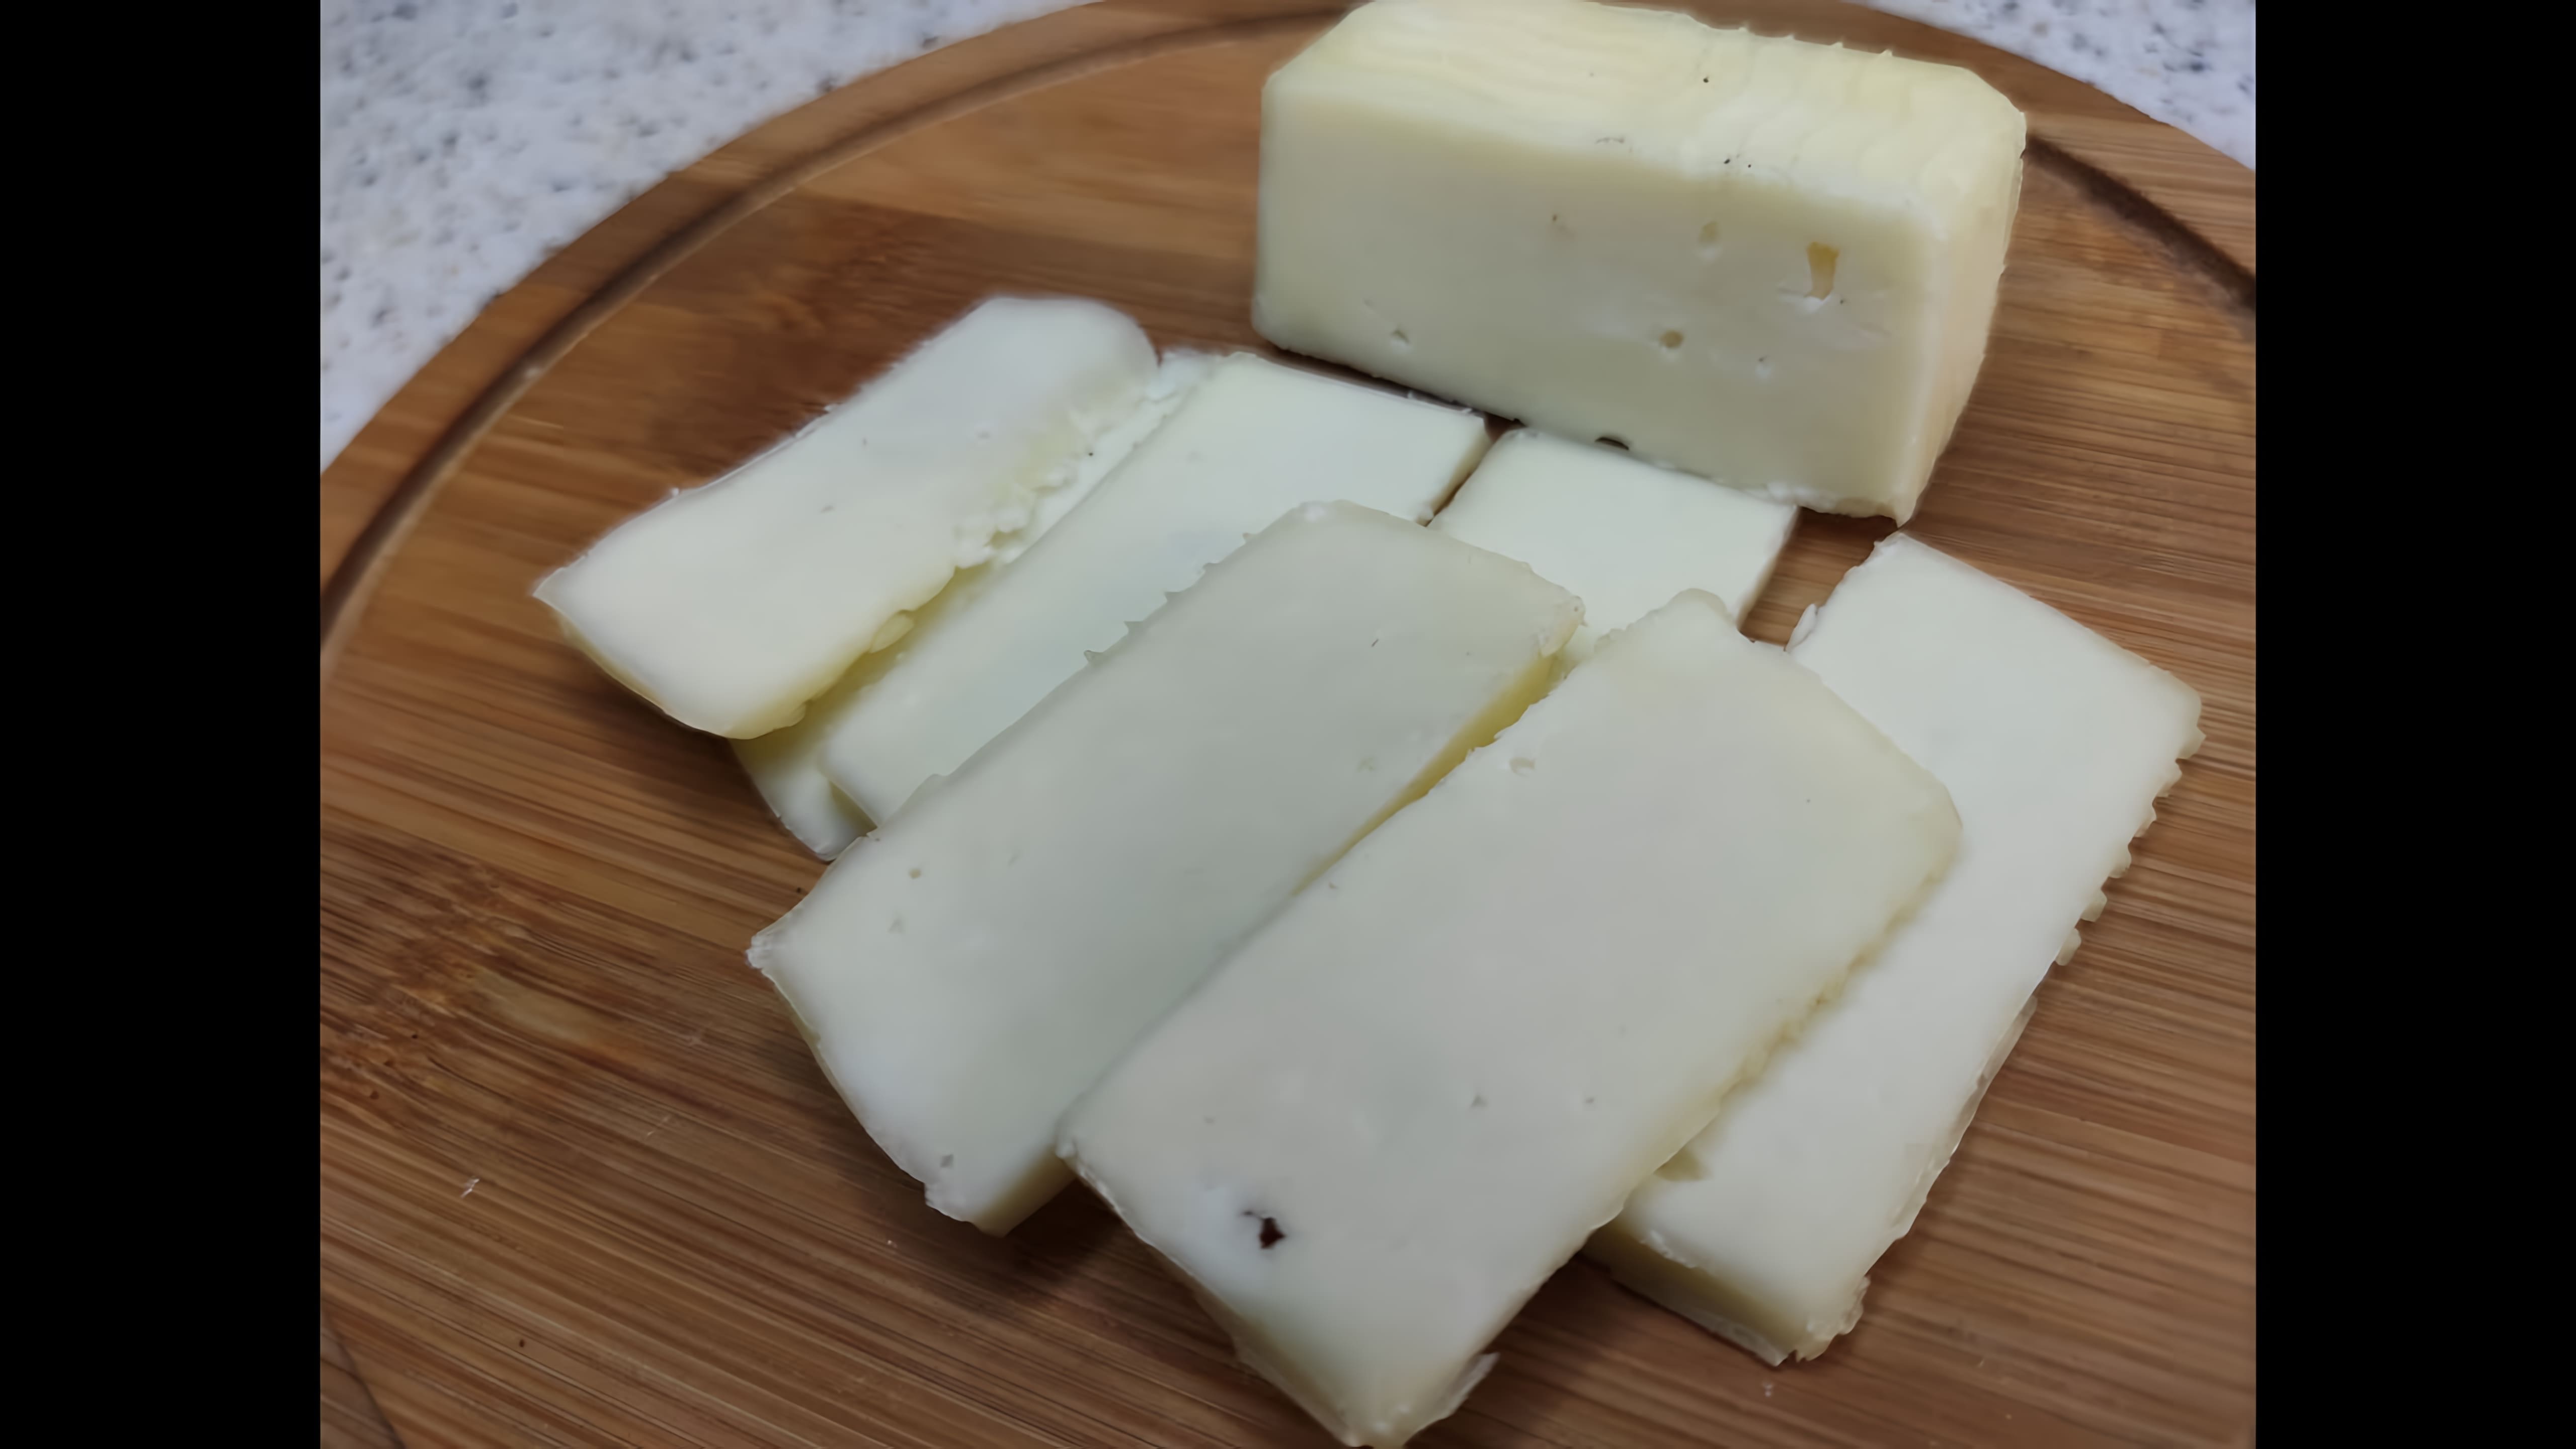 В данном видео демонстрируется процесс приготовления итальянского сыра Примо Сале (Primo Sale) в домашних условиях